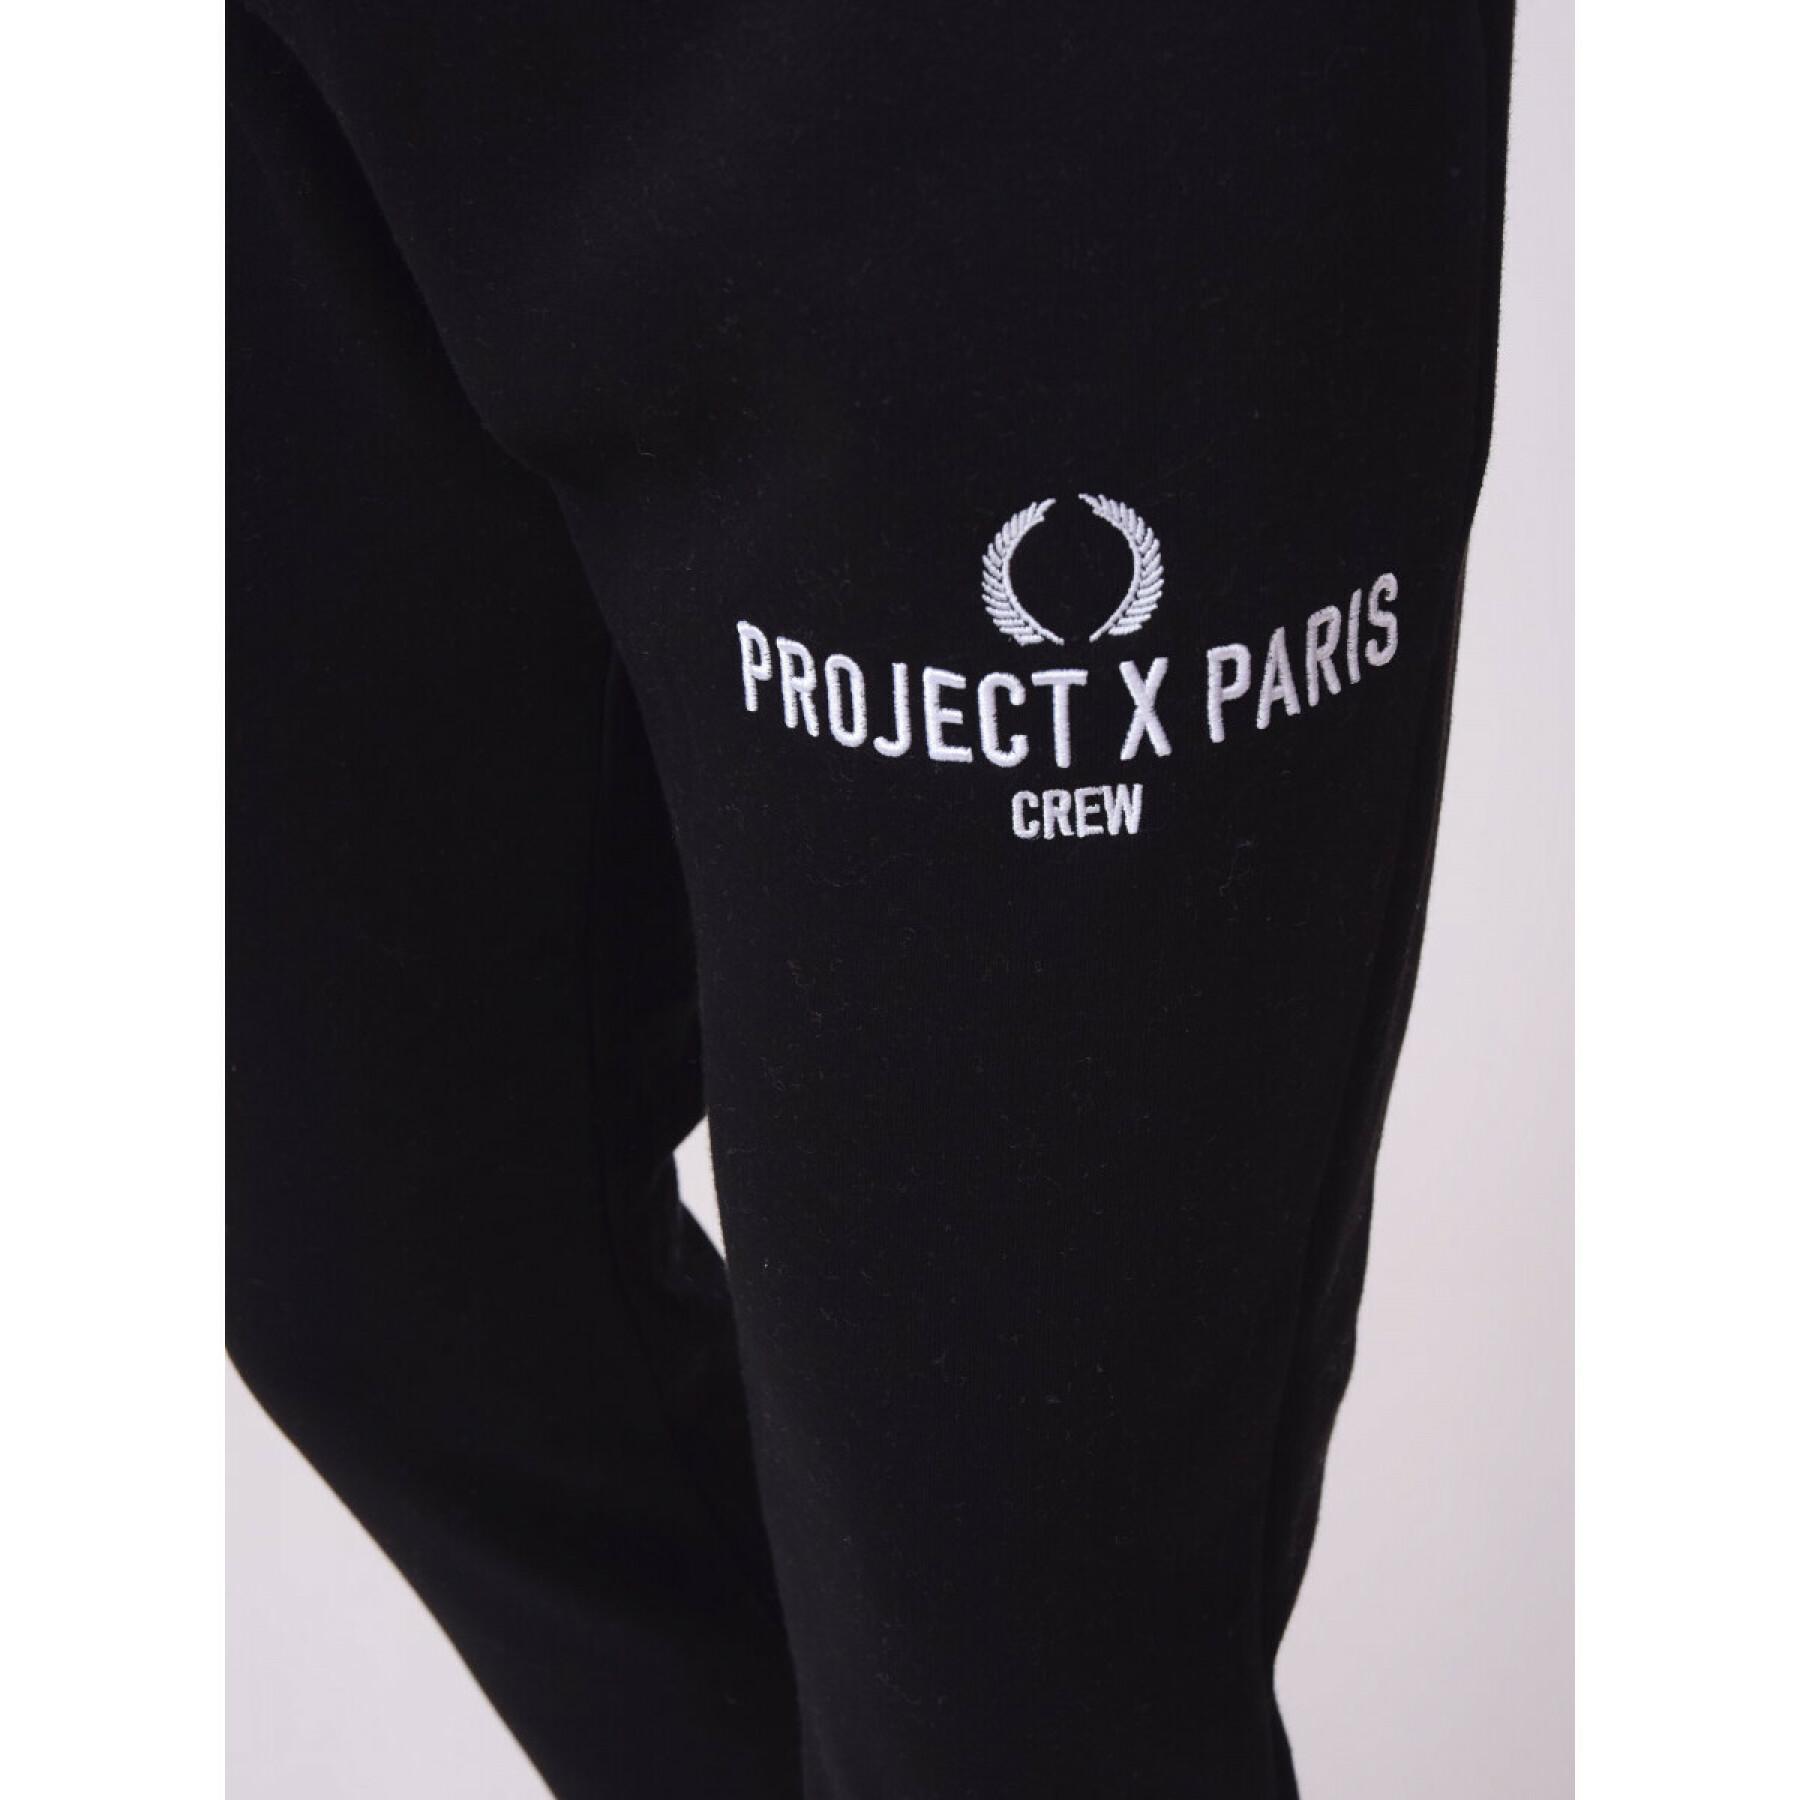 Bañador bordado Project X Paris Crew